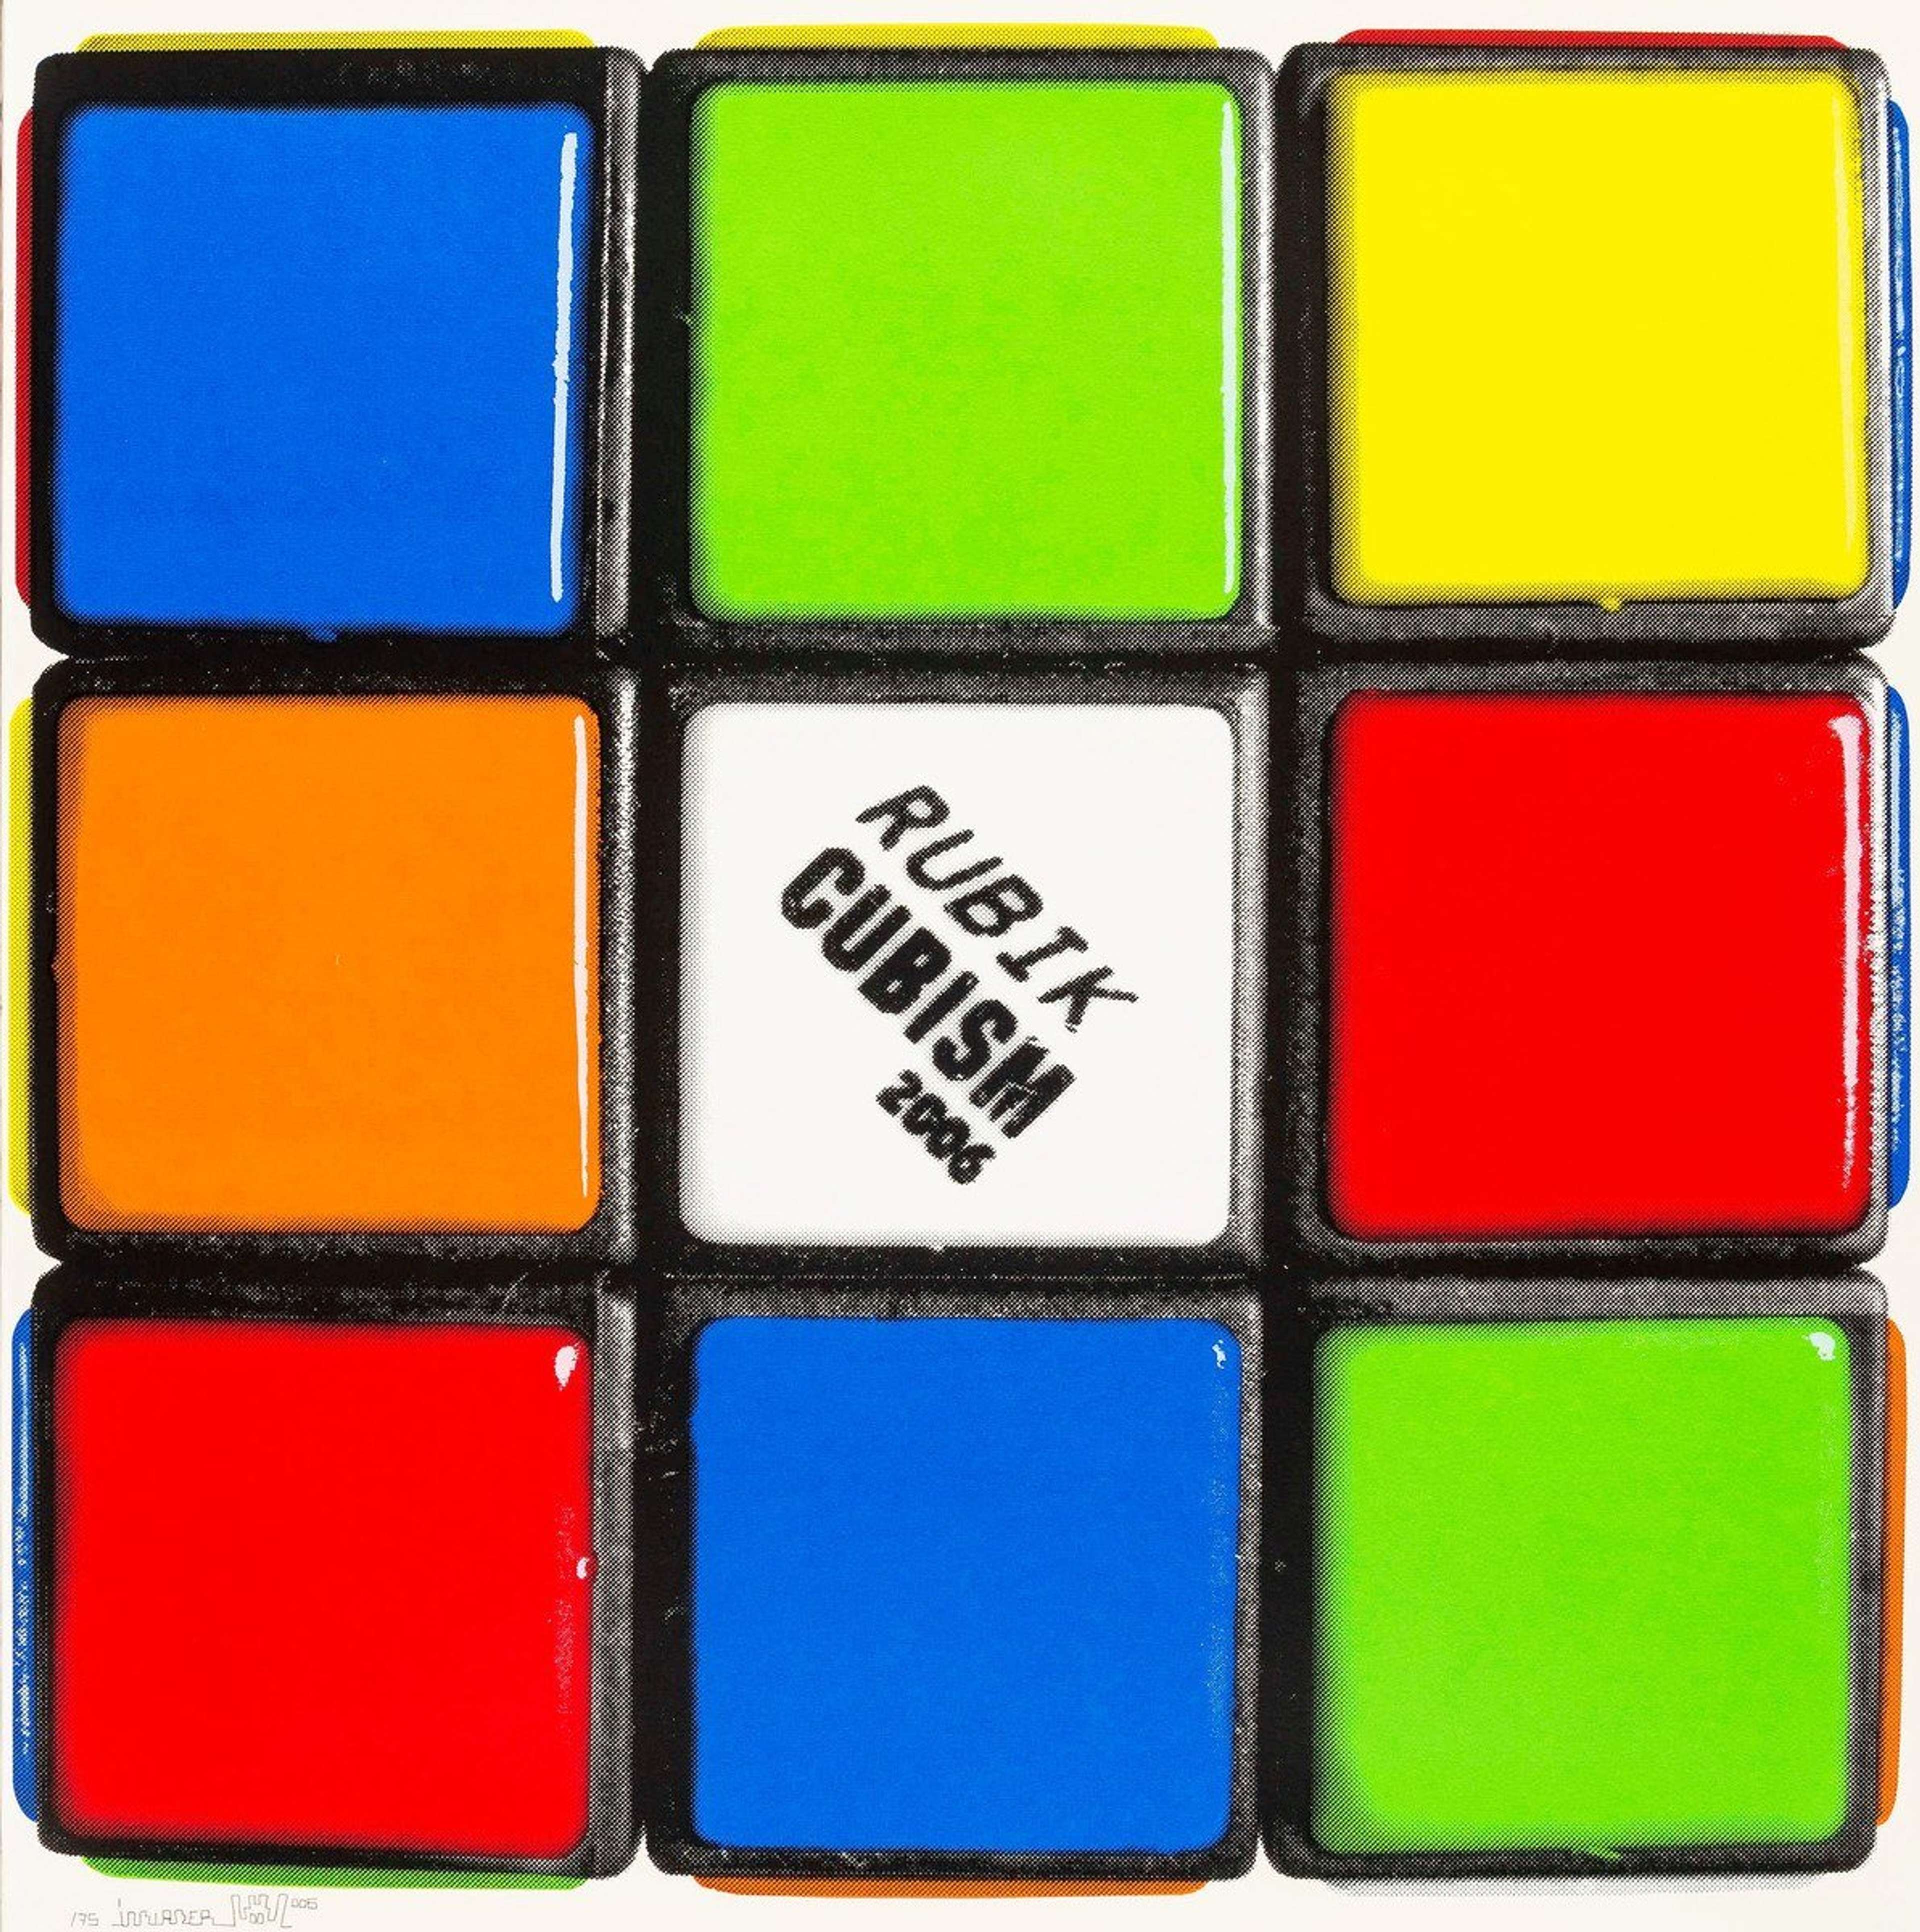 Rubikcubism